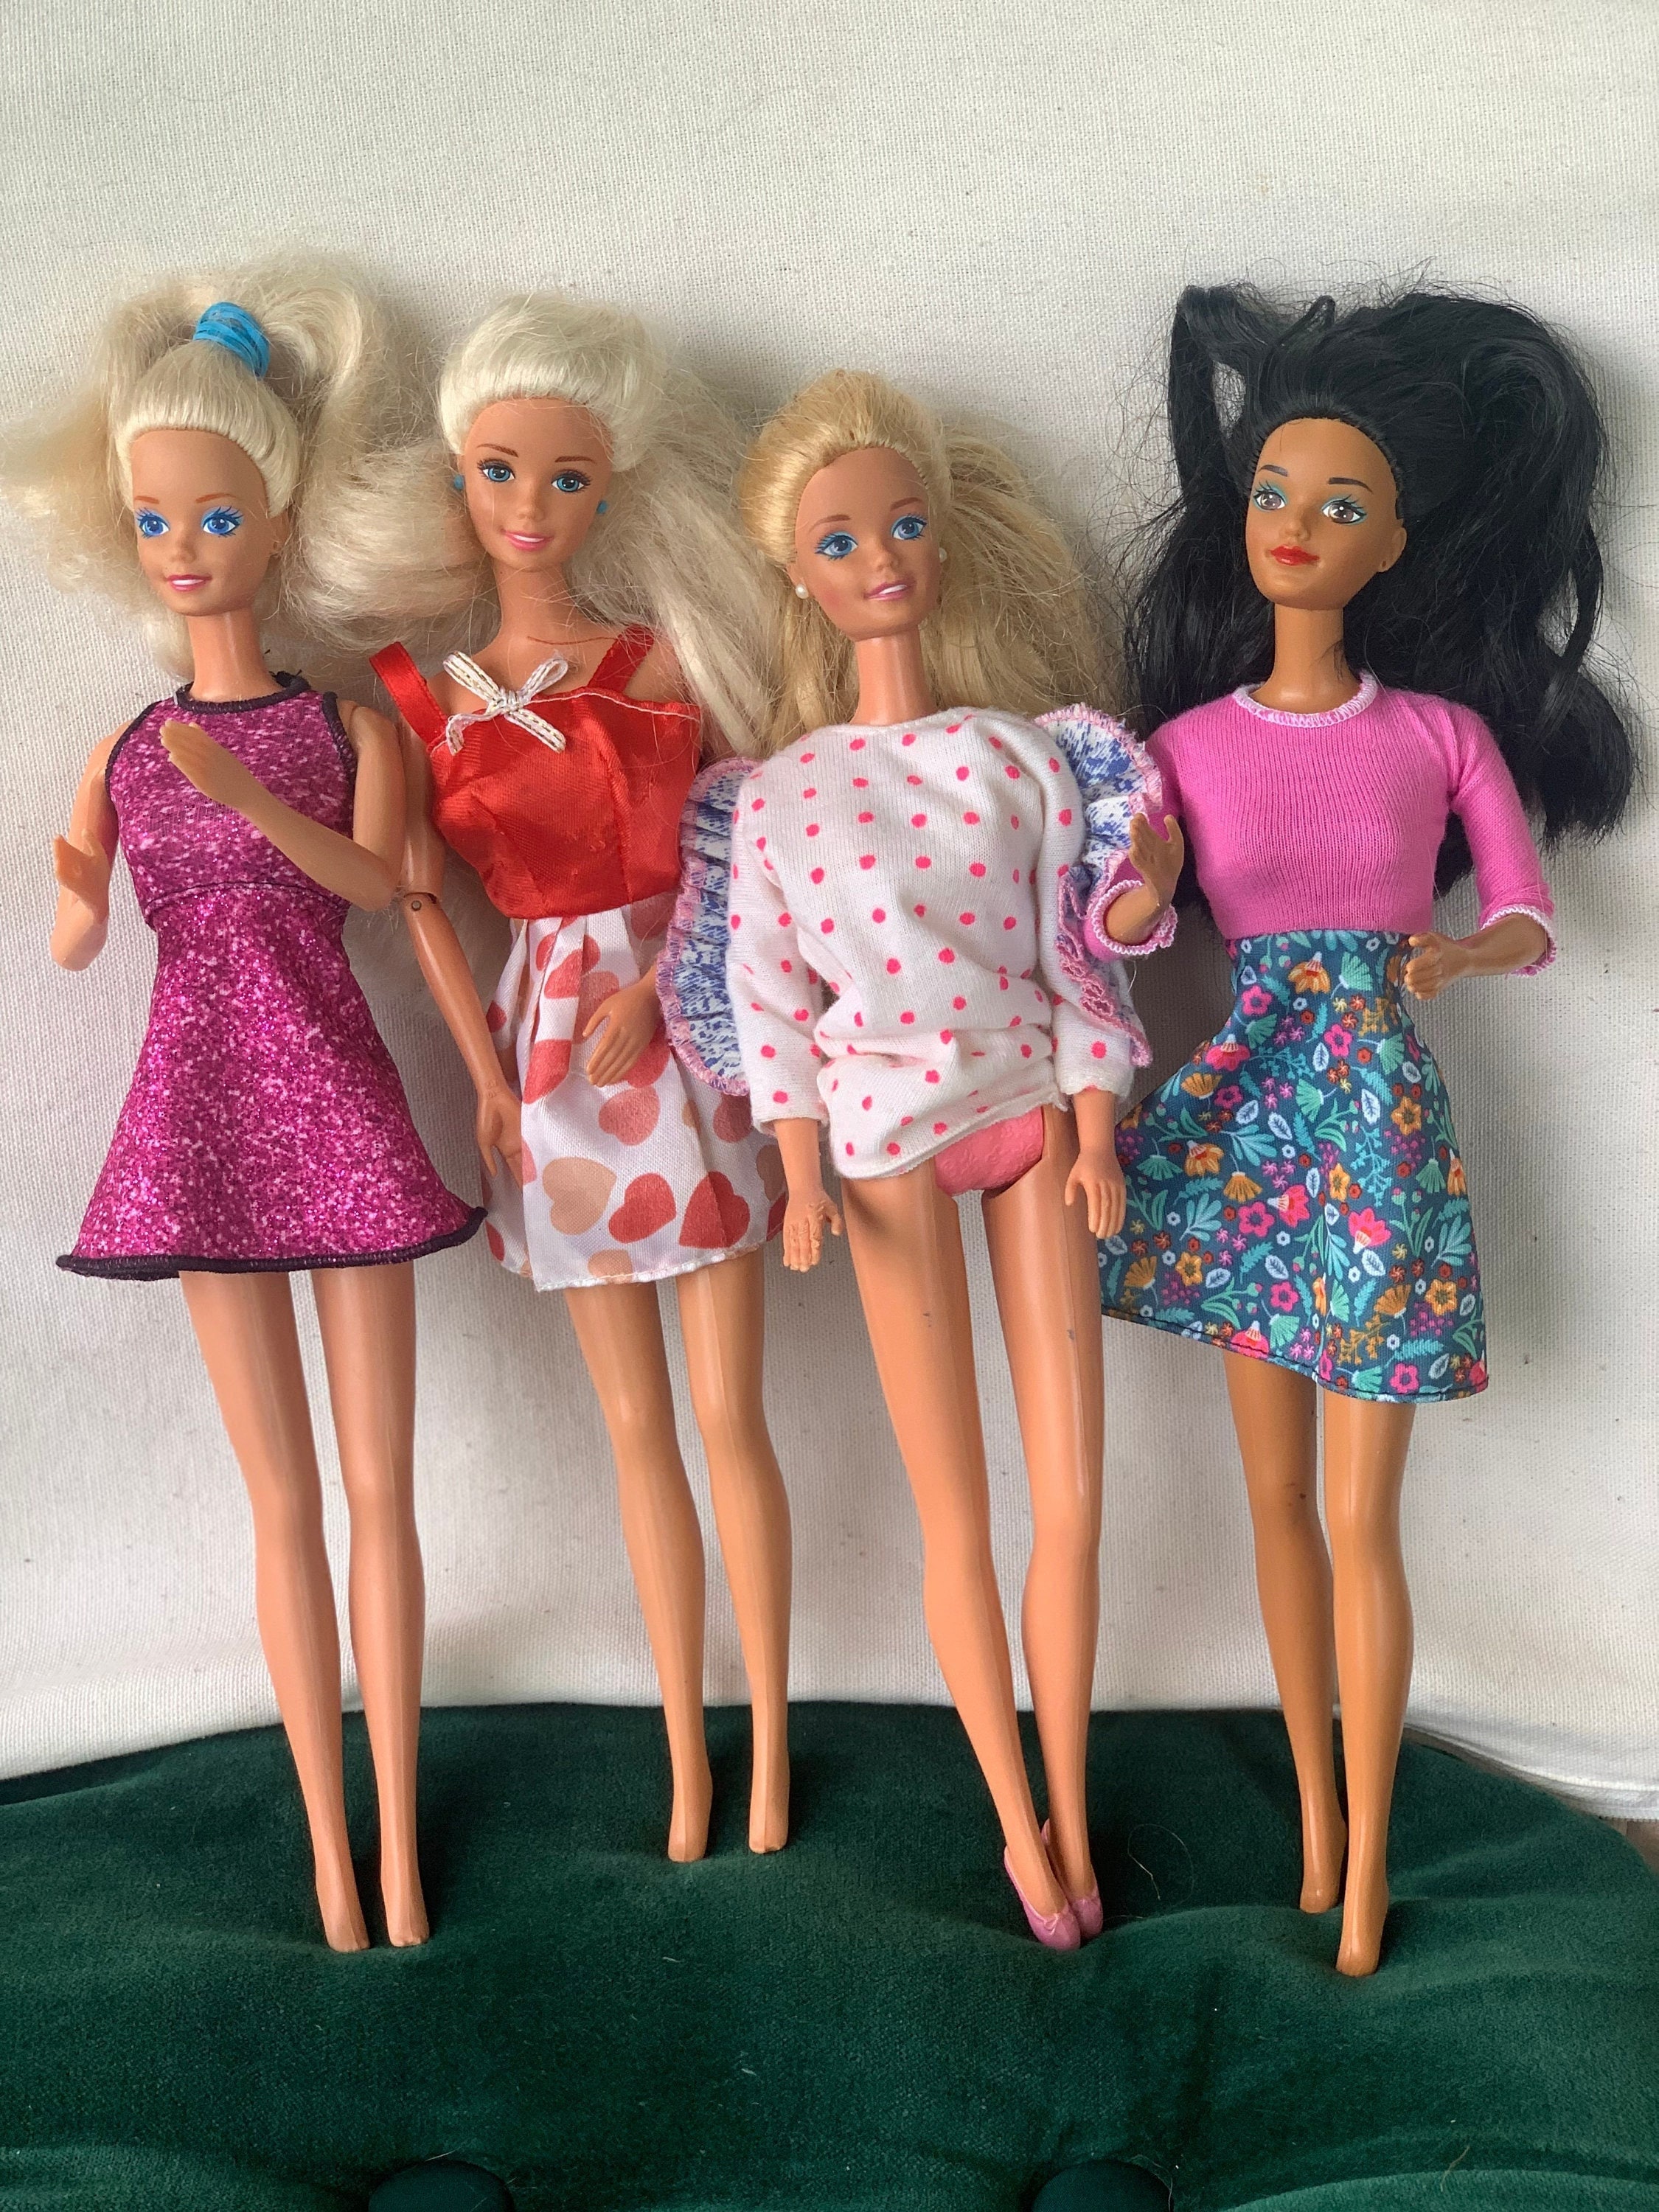 Disfraz de Barbie Vichy para mujer - Envío 24h